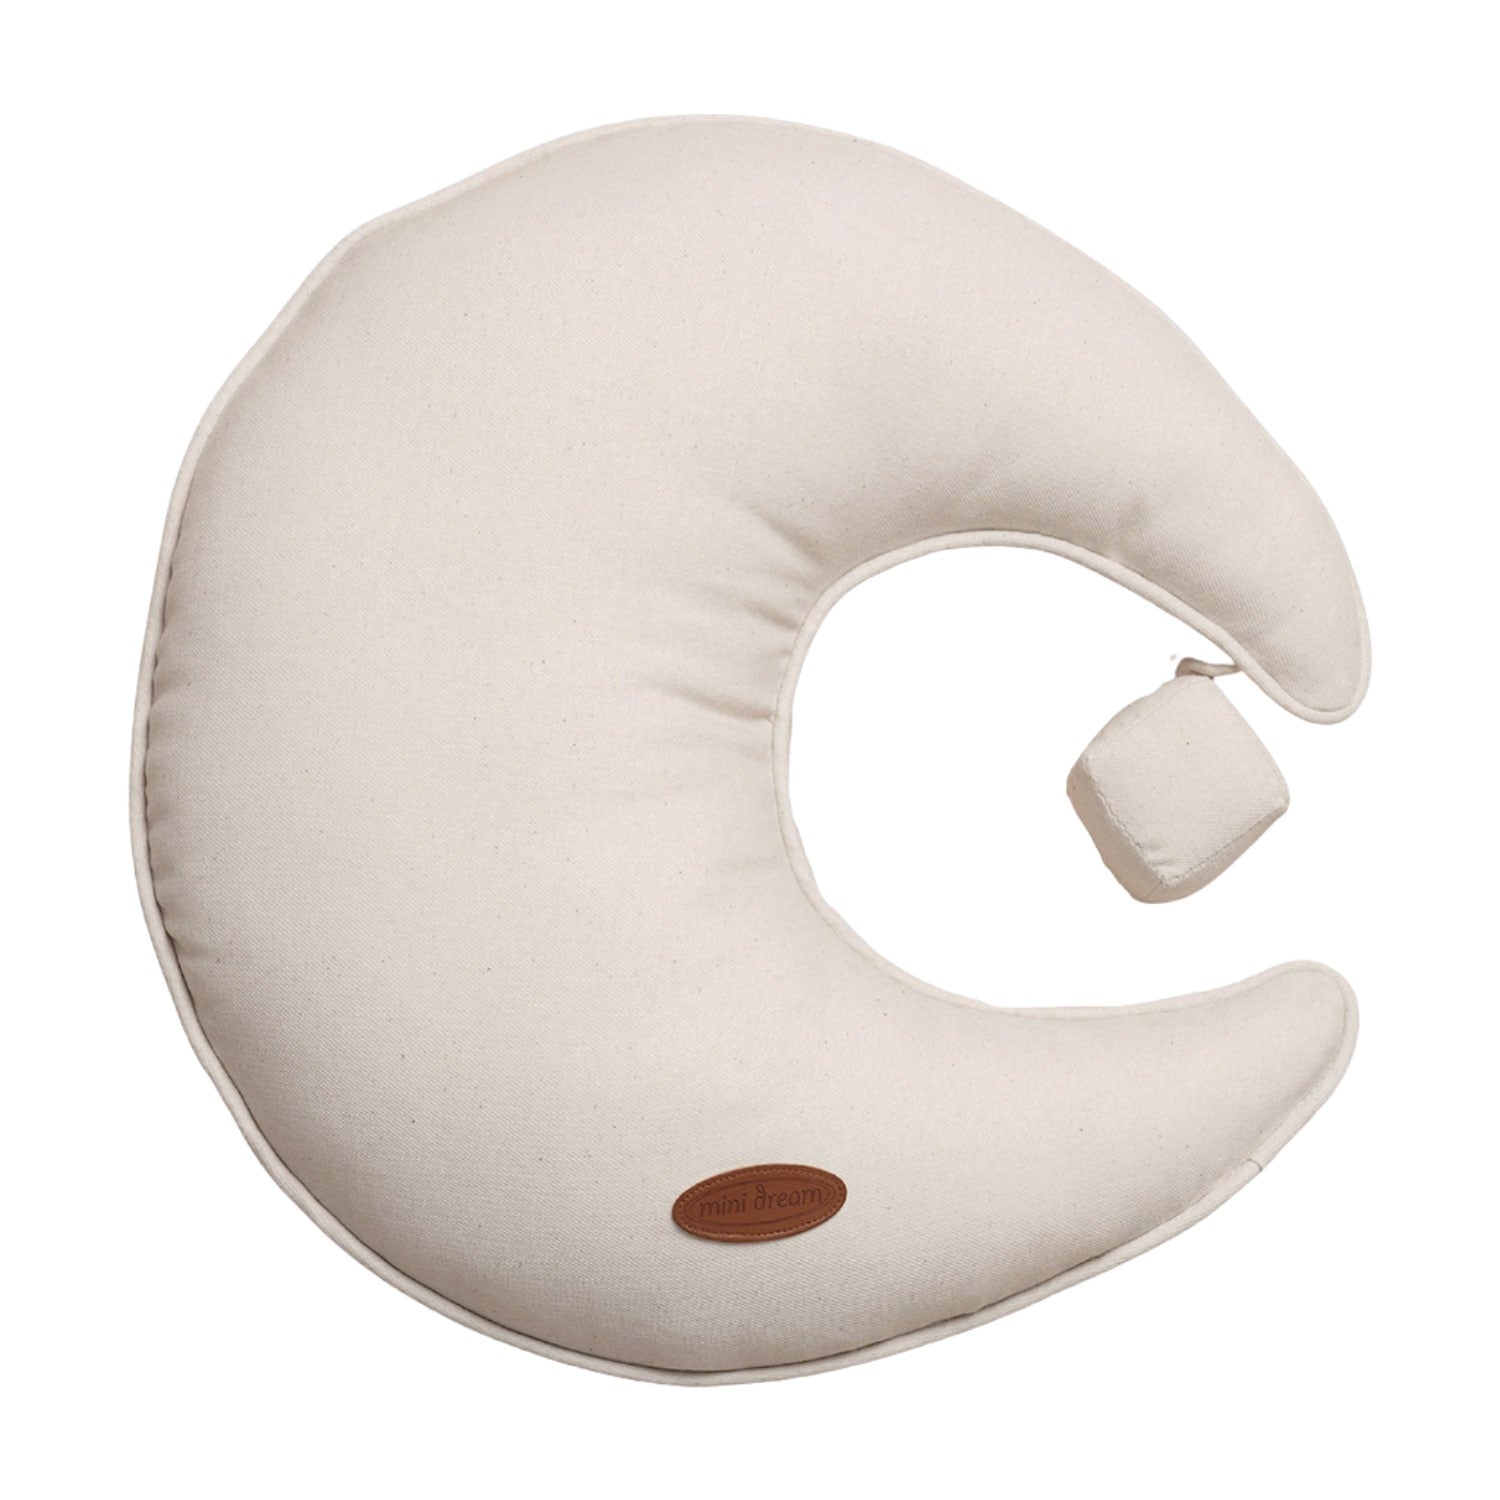 An image of Nursery Cushions - Organic Kids Moon Cushion - Cotton Cushion | Mini Dream